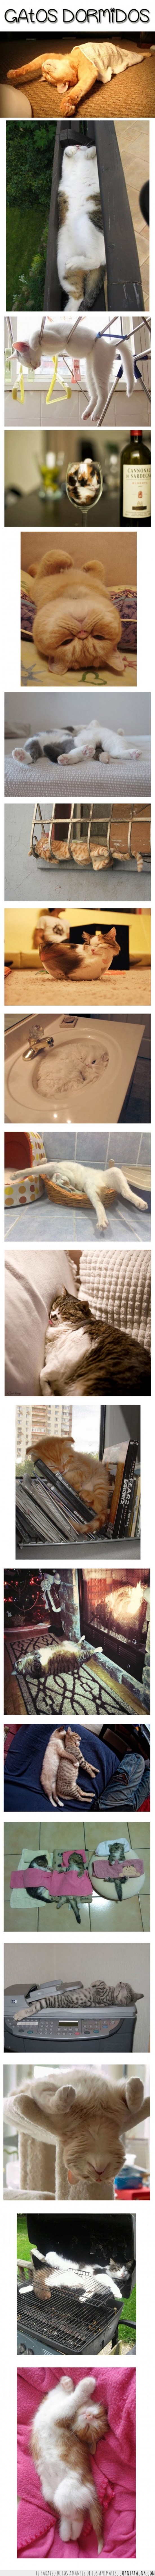 gatos,cats,gatetes,dormidos,posiciones